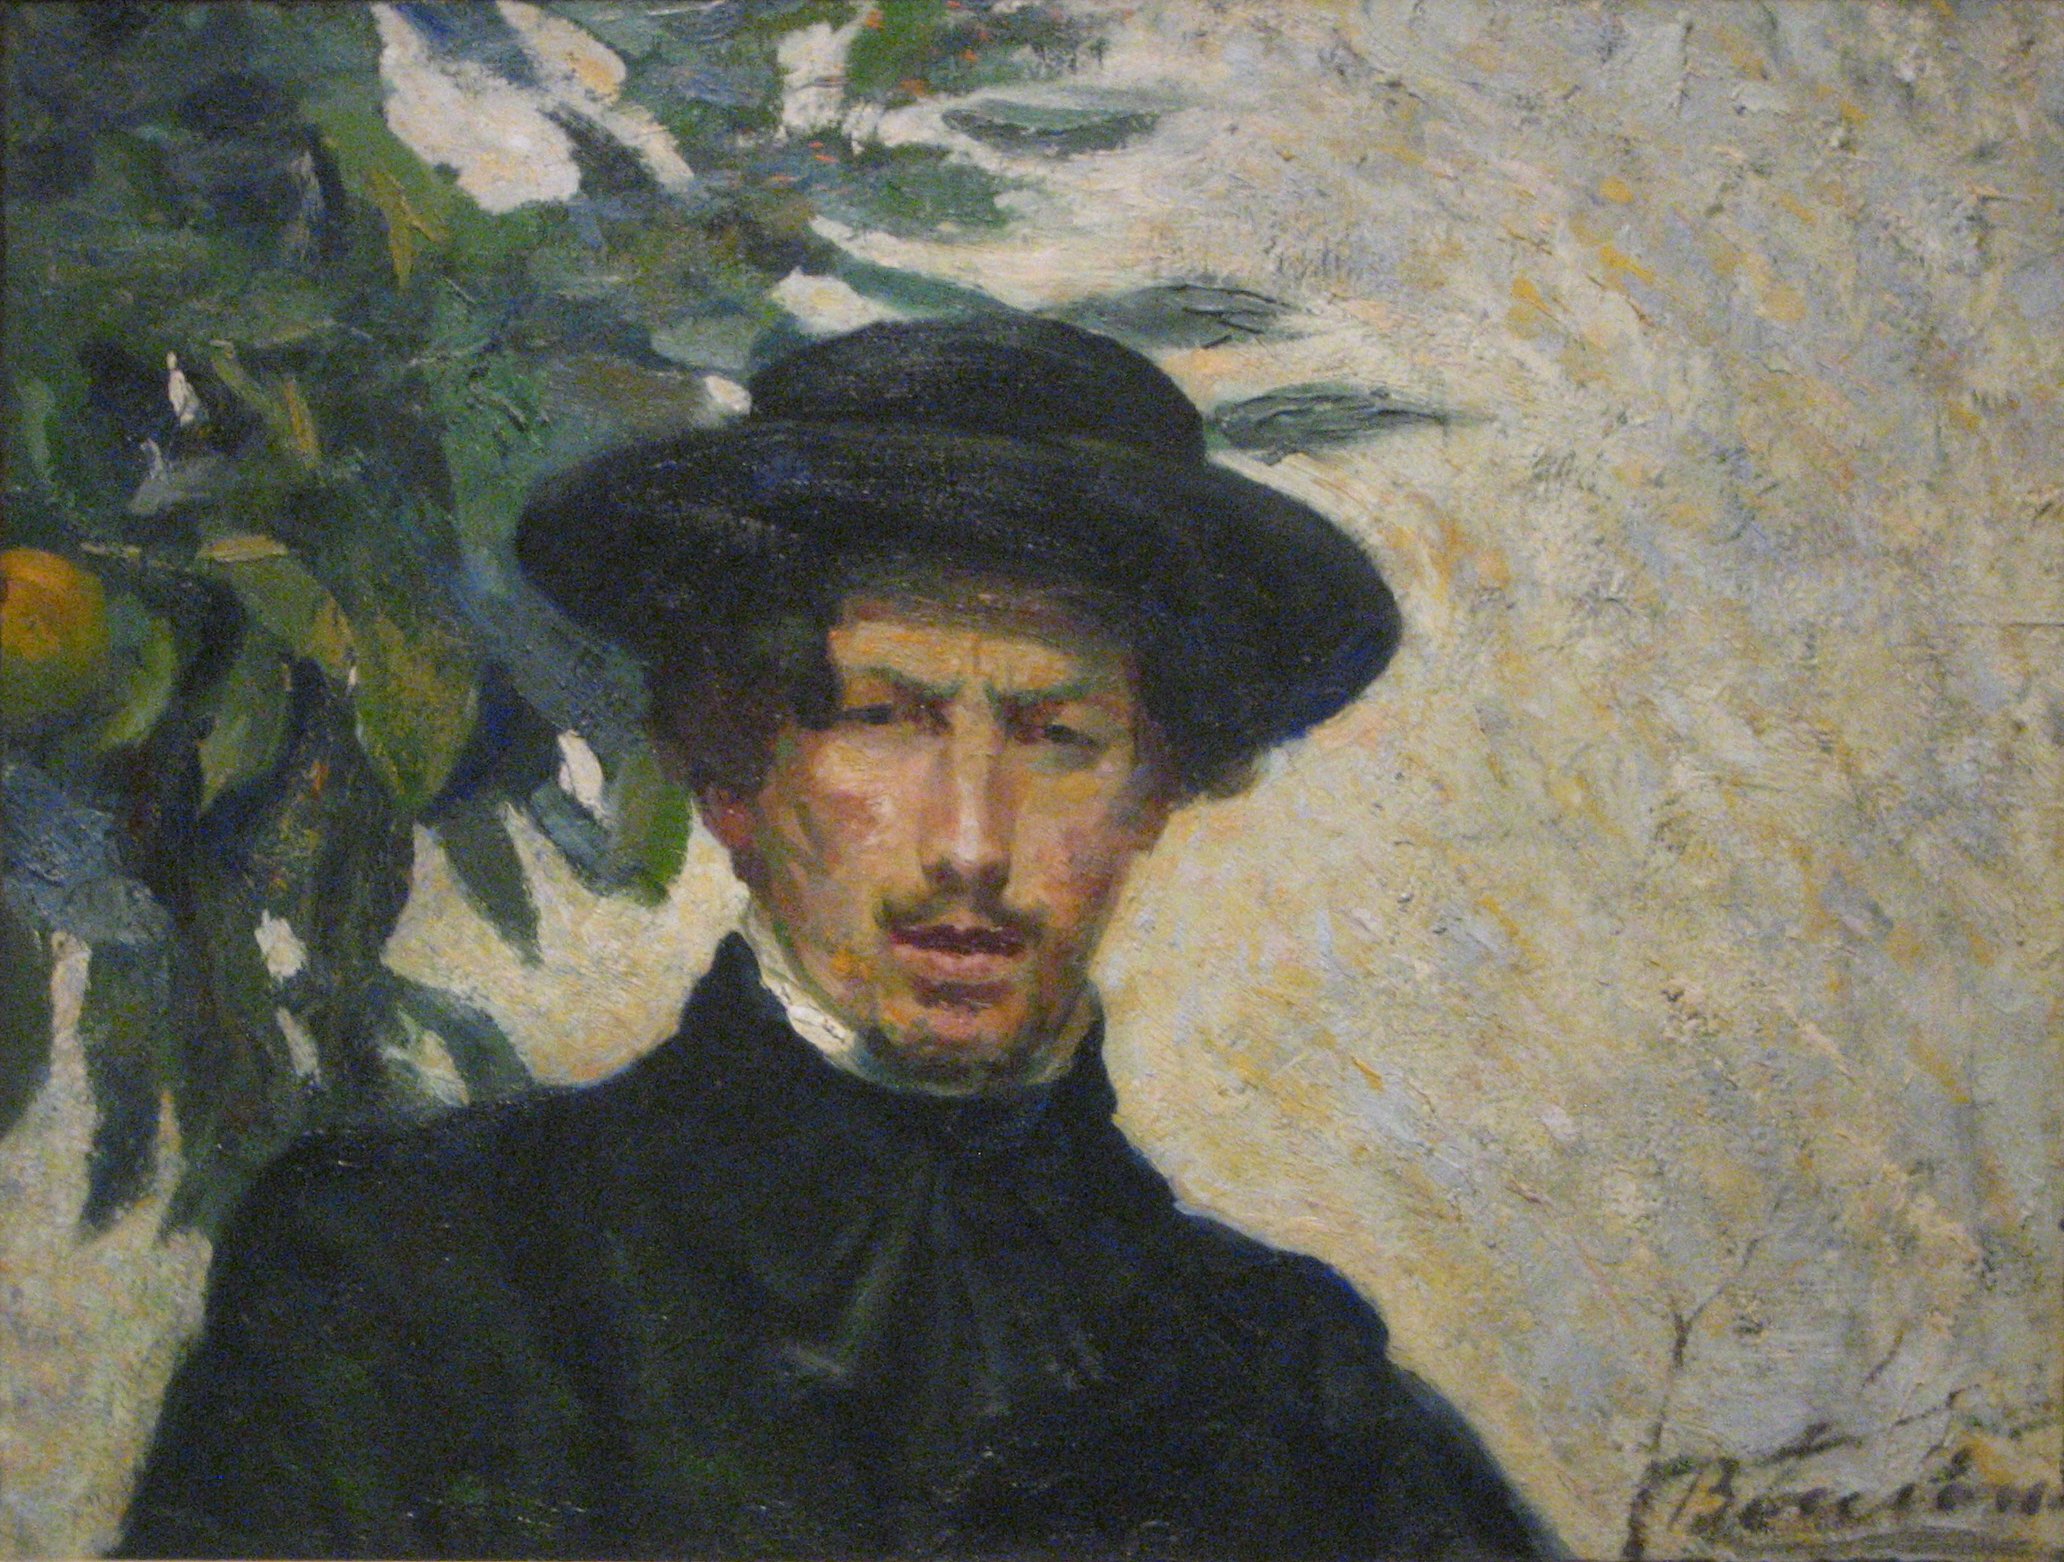 Umberto Boccioni - October 19, 1882 - August 17, 1916